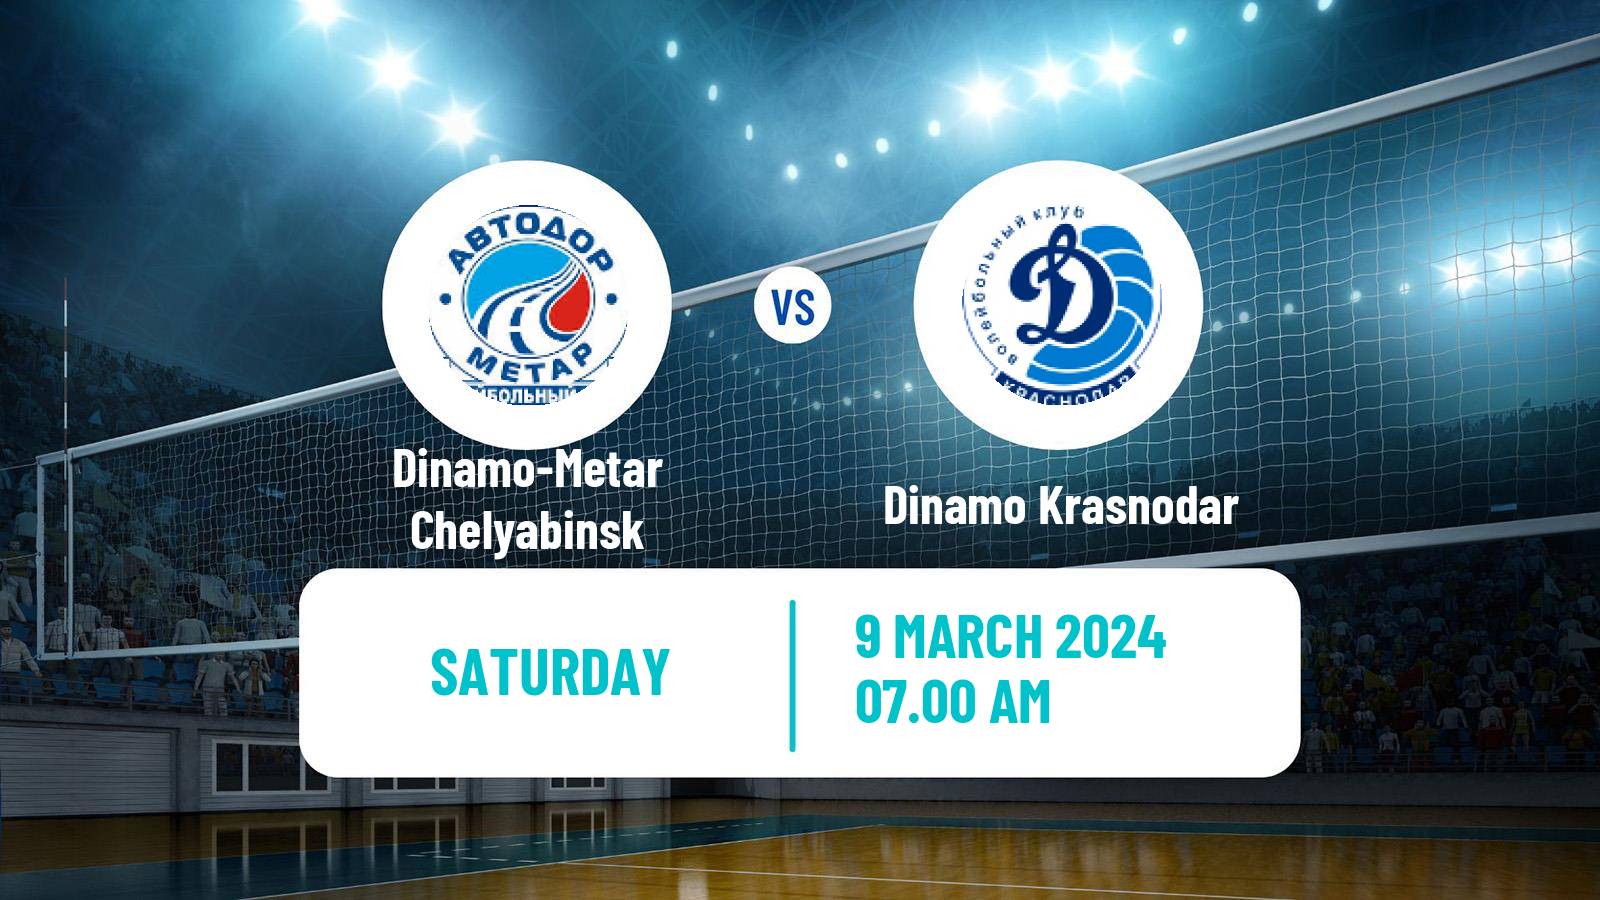 Volleyball Russian Super League Volleyball Women Dinamo-Metar Chelyabinsk - Dinamo Krasnodar